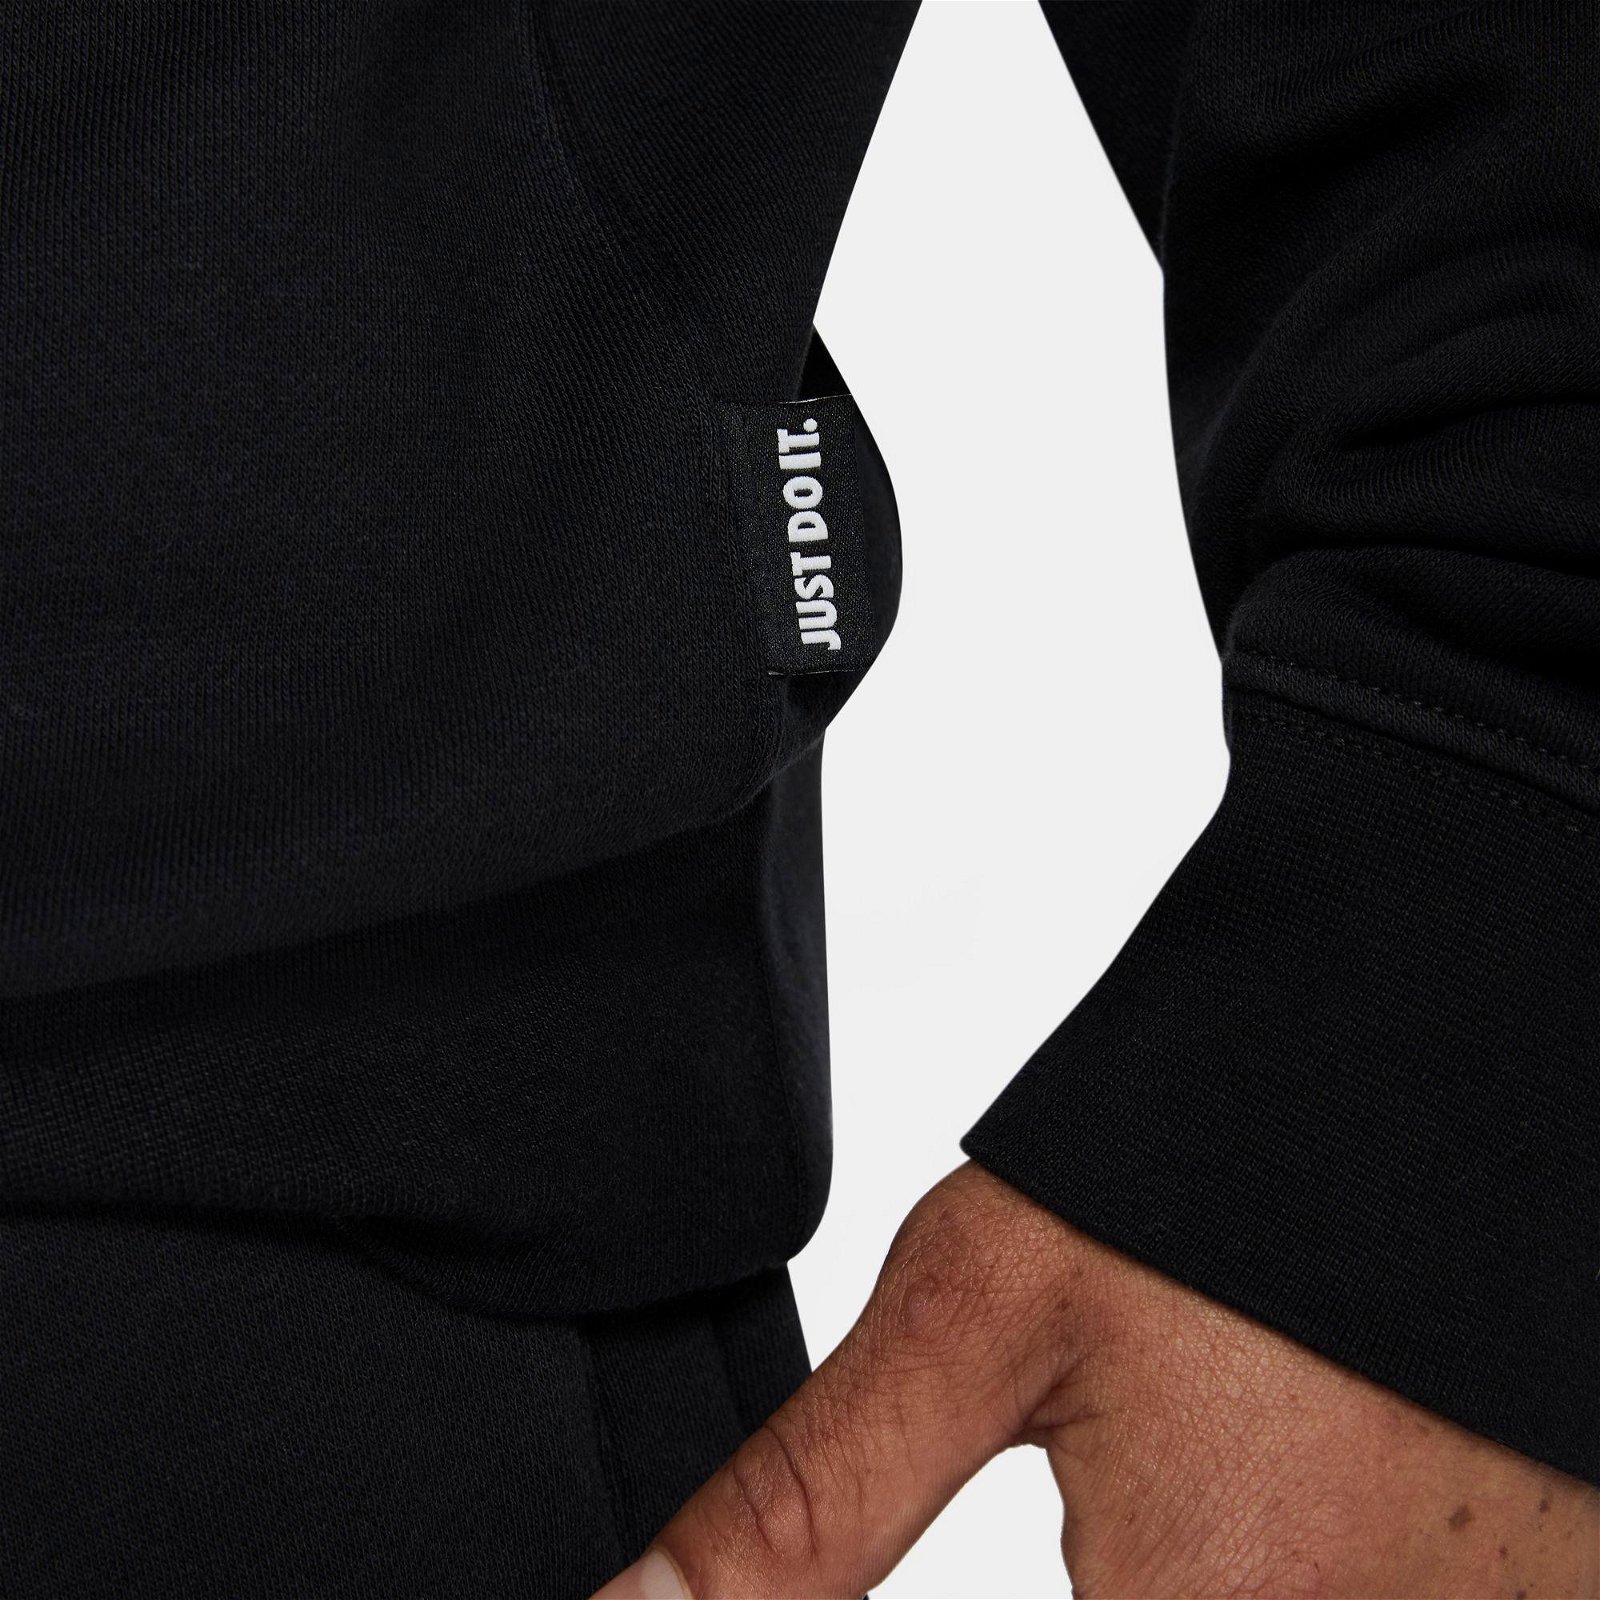 Nike Sportswear Jdi Flecee Crew Erkek Siyah T-Shirt